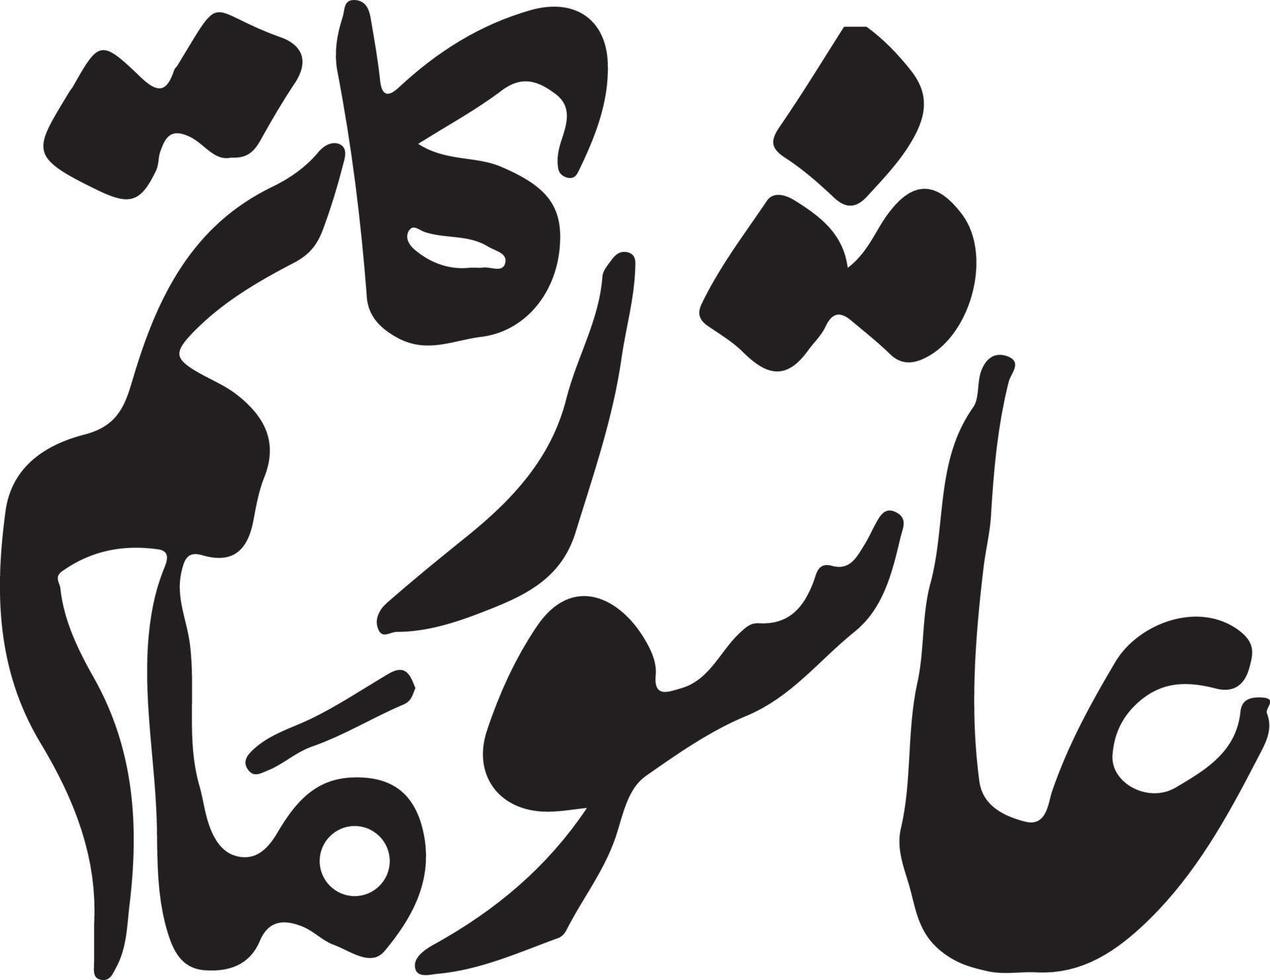 ashoor ka matam título islâmico urdu caligrafia árabe vetor grátis